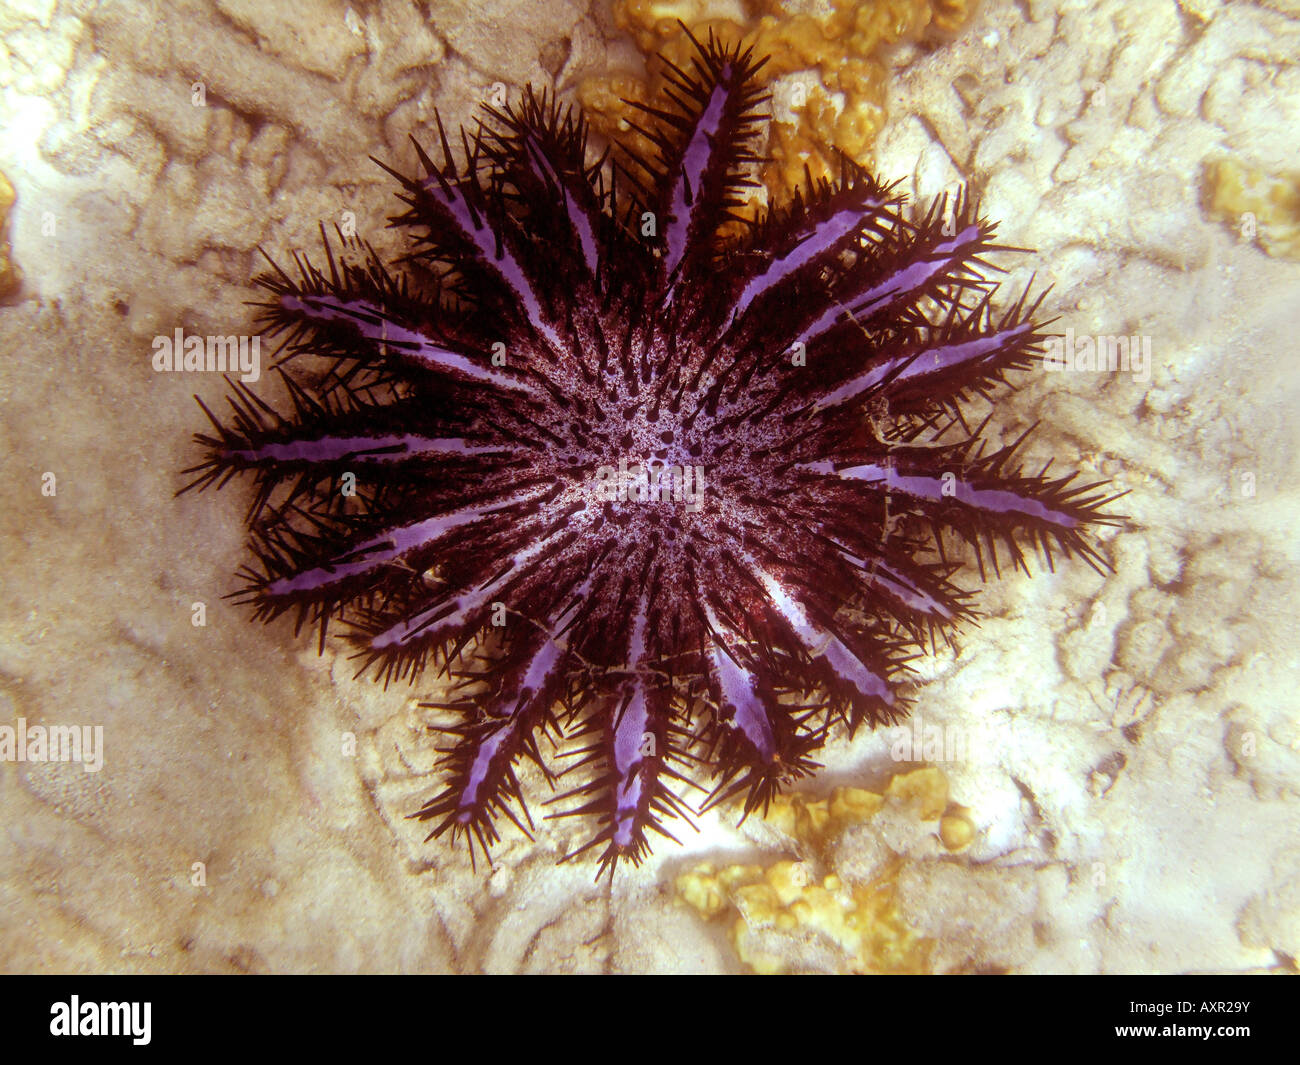 Crown-of-thorns Starfish Stock Photo